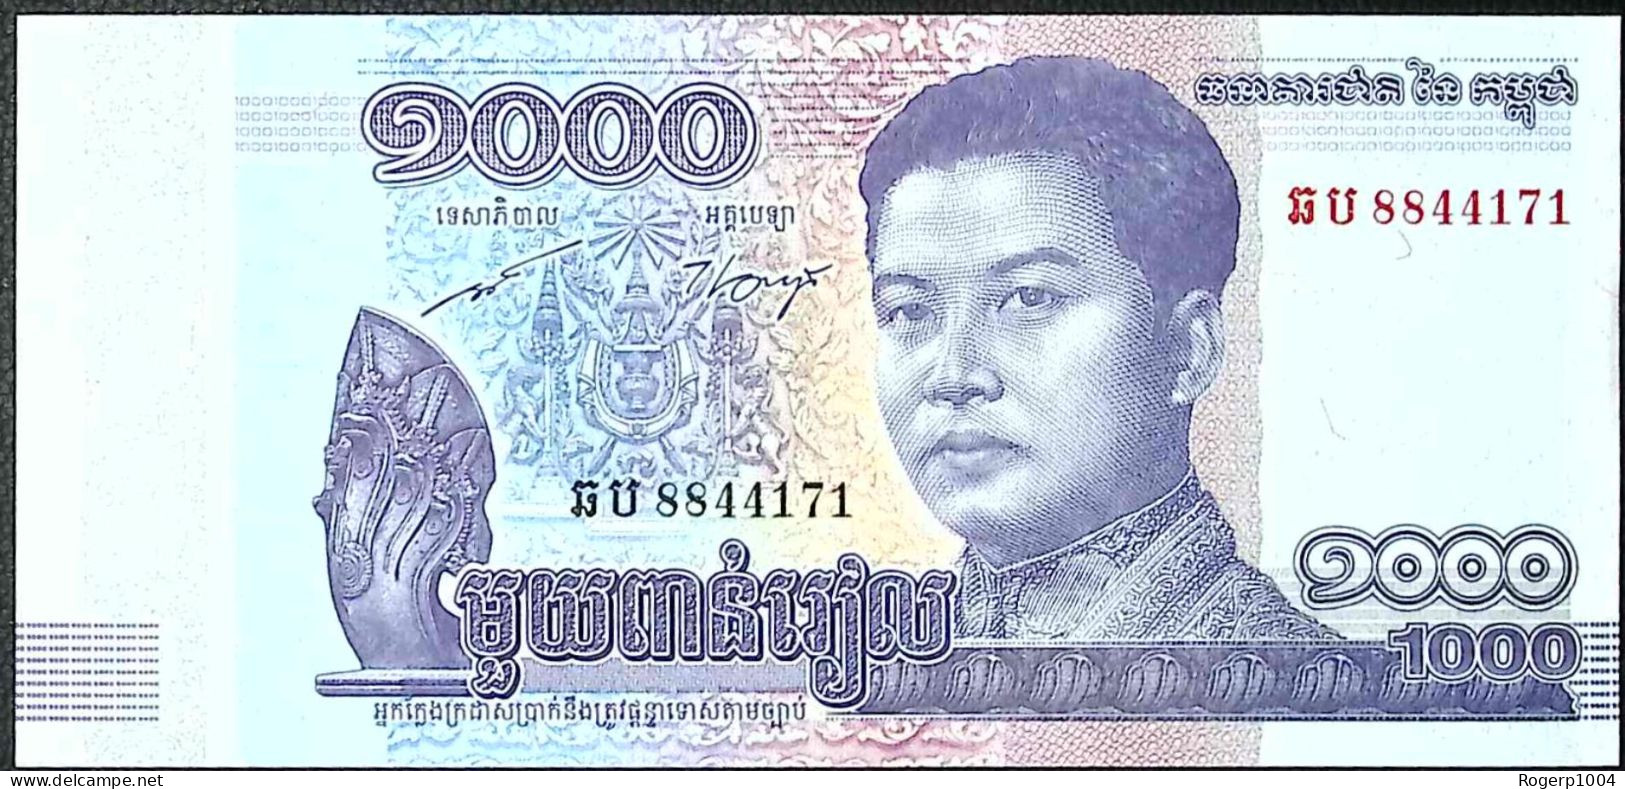 CAMBODGE/CAMBODIA * 1.000 Riels * Date 2016 * Etat/Grade NEUF/UNC * - Cambogia